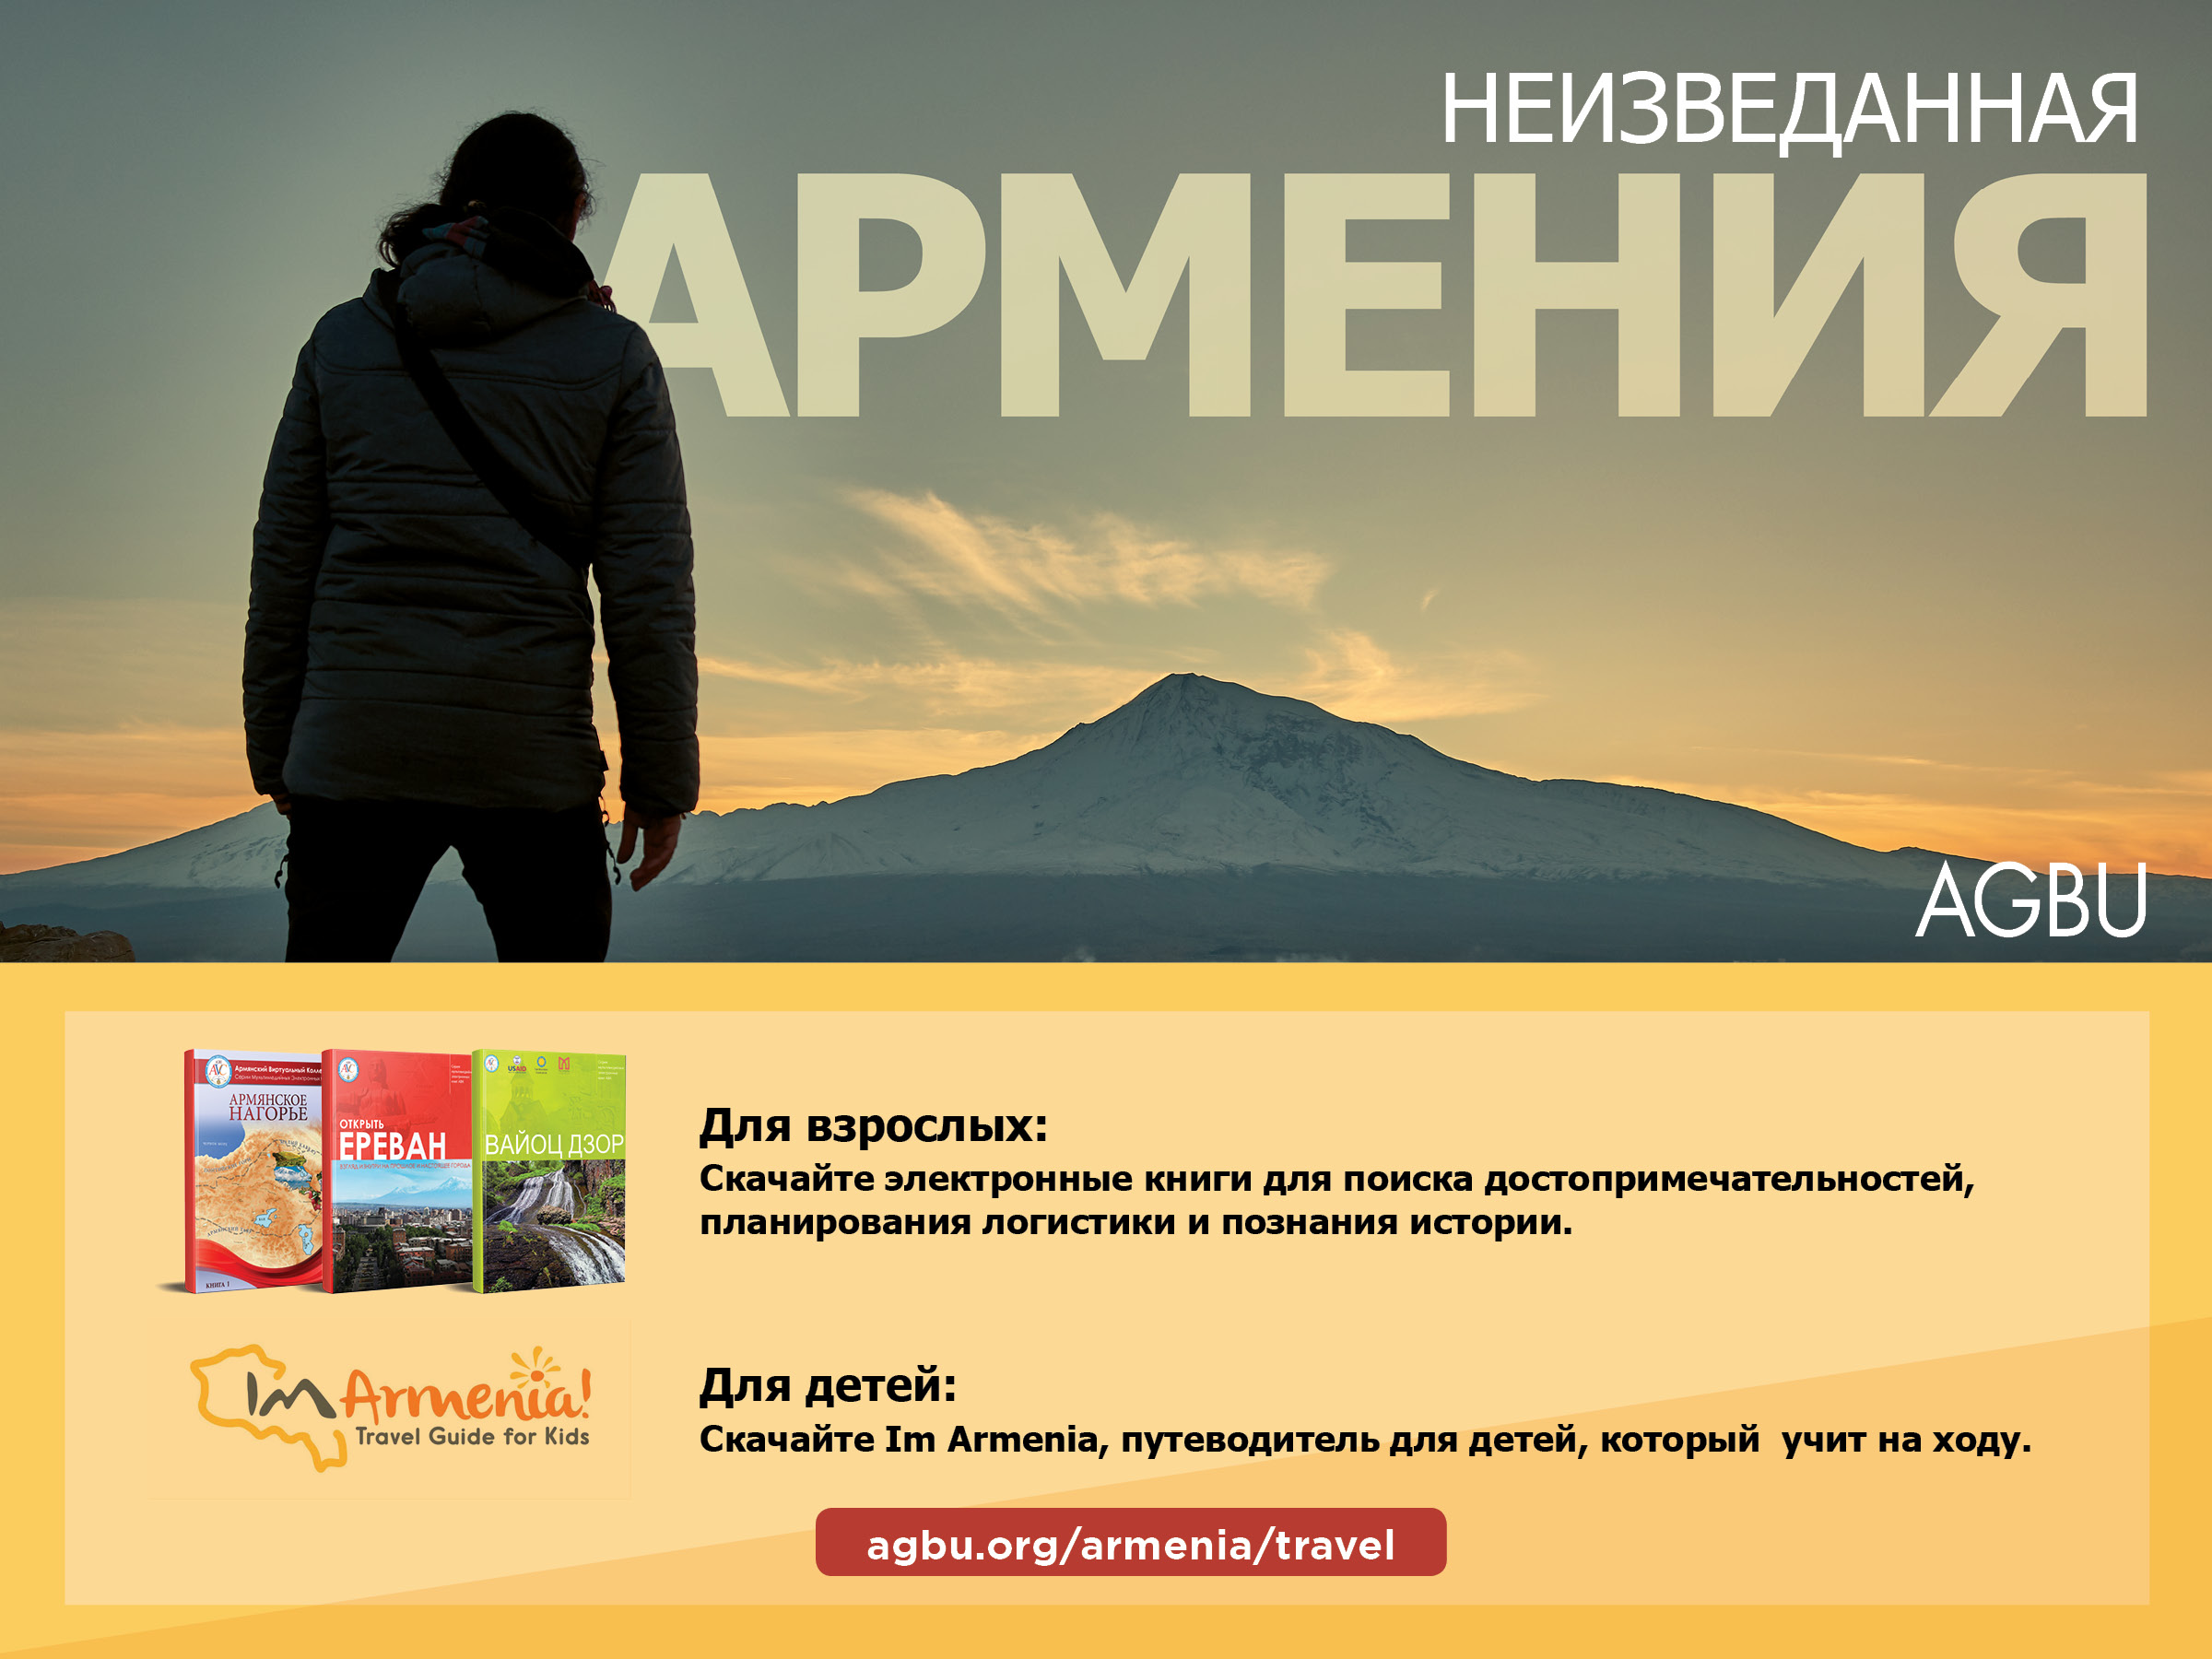 AGBU предлагает необходимые всем электронные книги и приложения об Армении